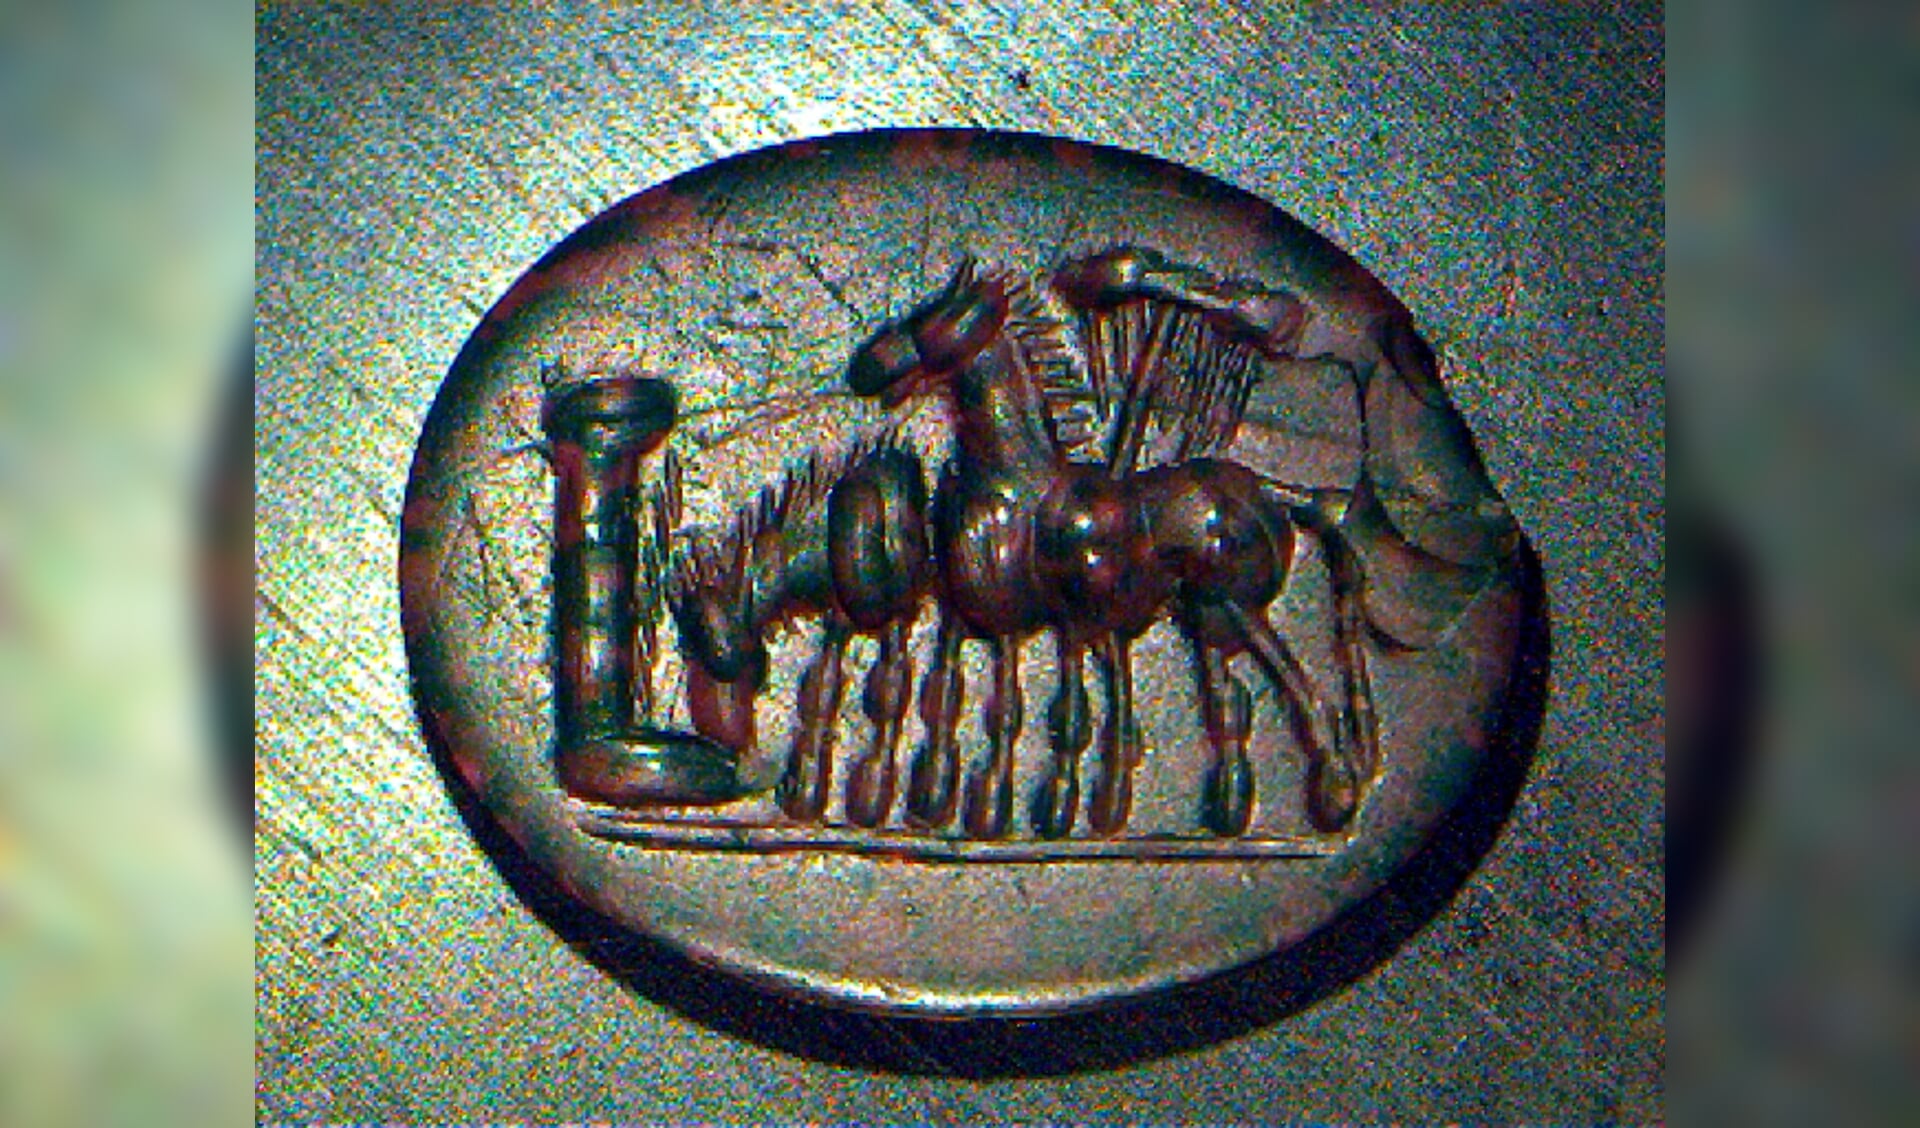 Op deze paarse gem twee paarden die drinken uit een trog Op de rode gem de afbeelding van de gevleugelde Romeinse godin Victoria